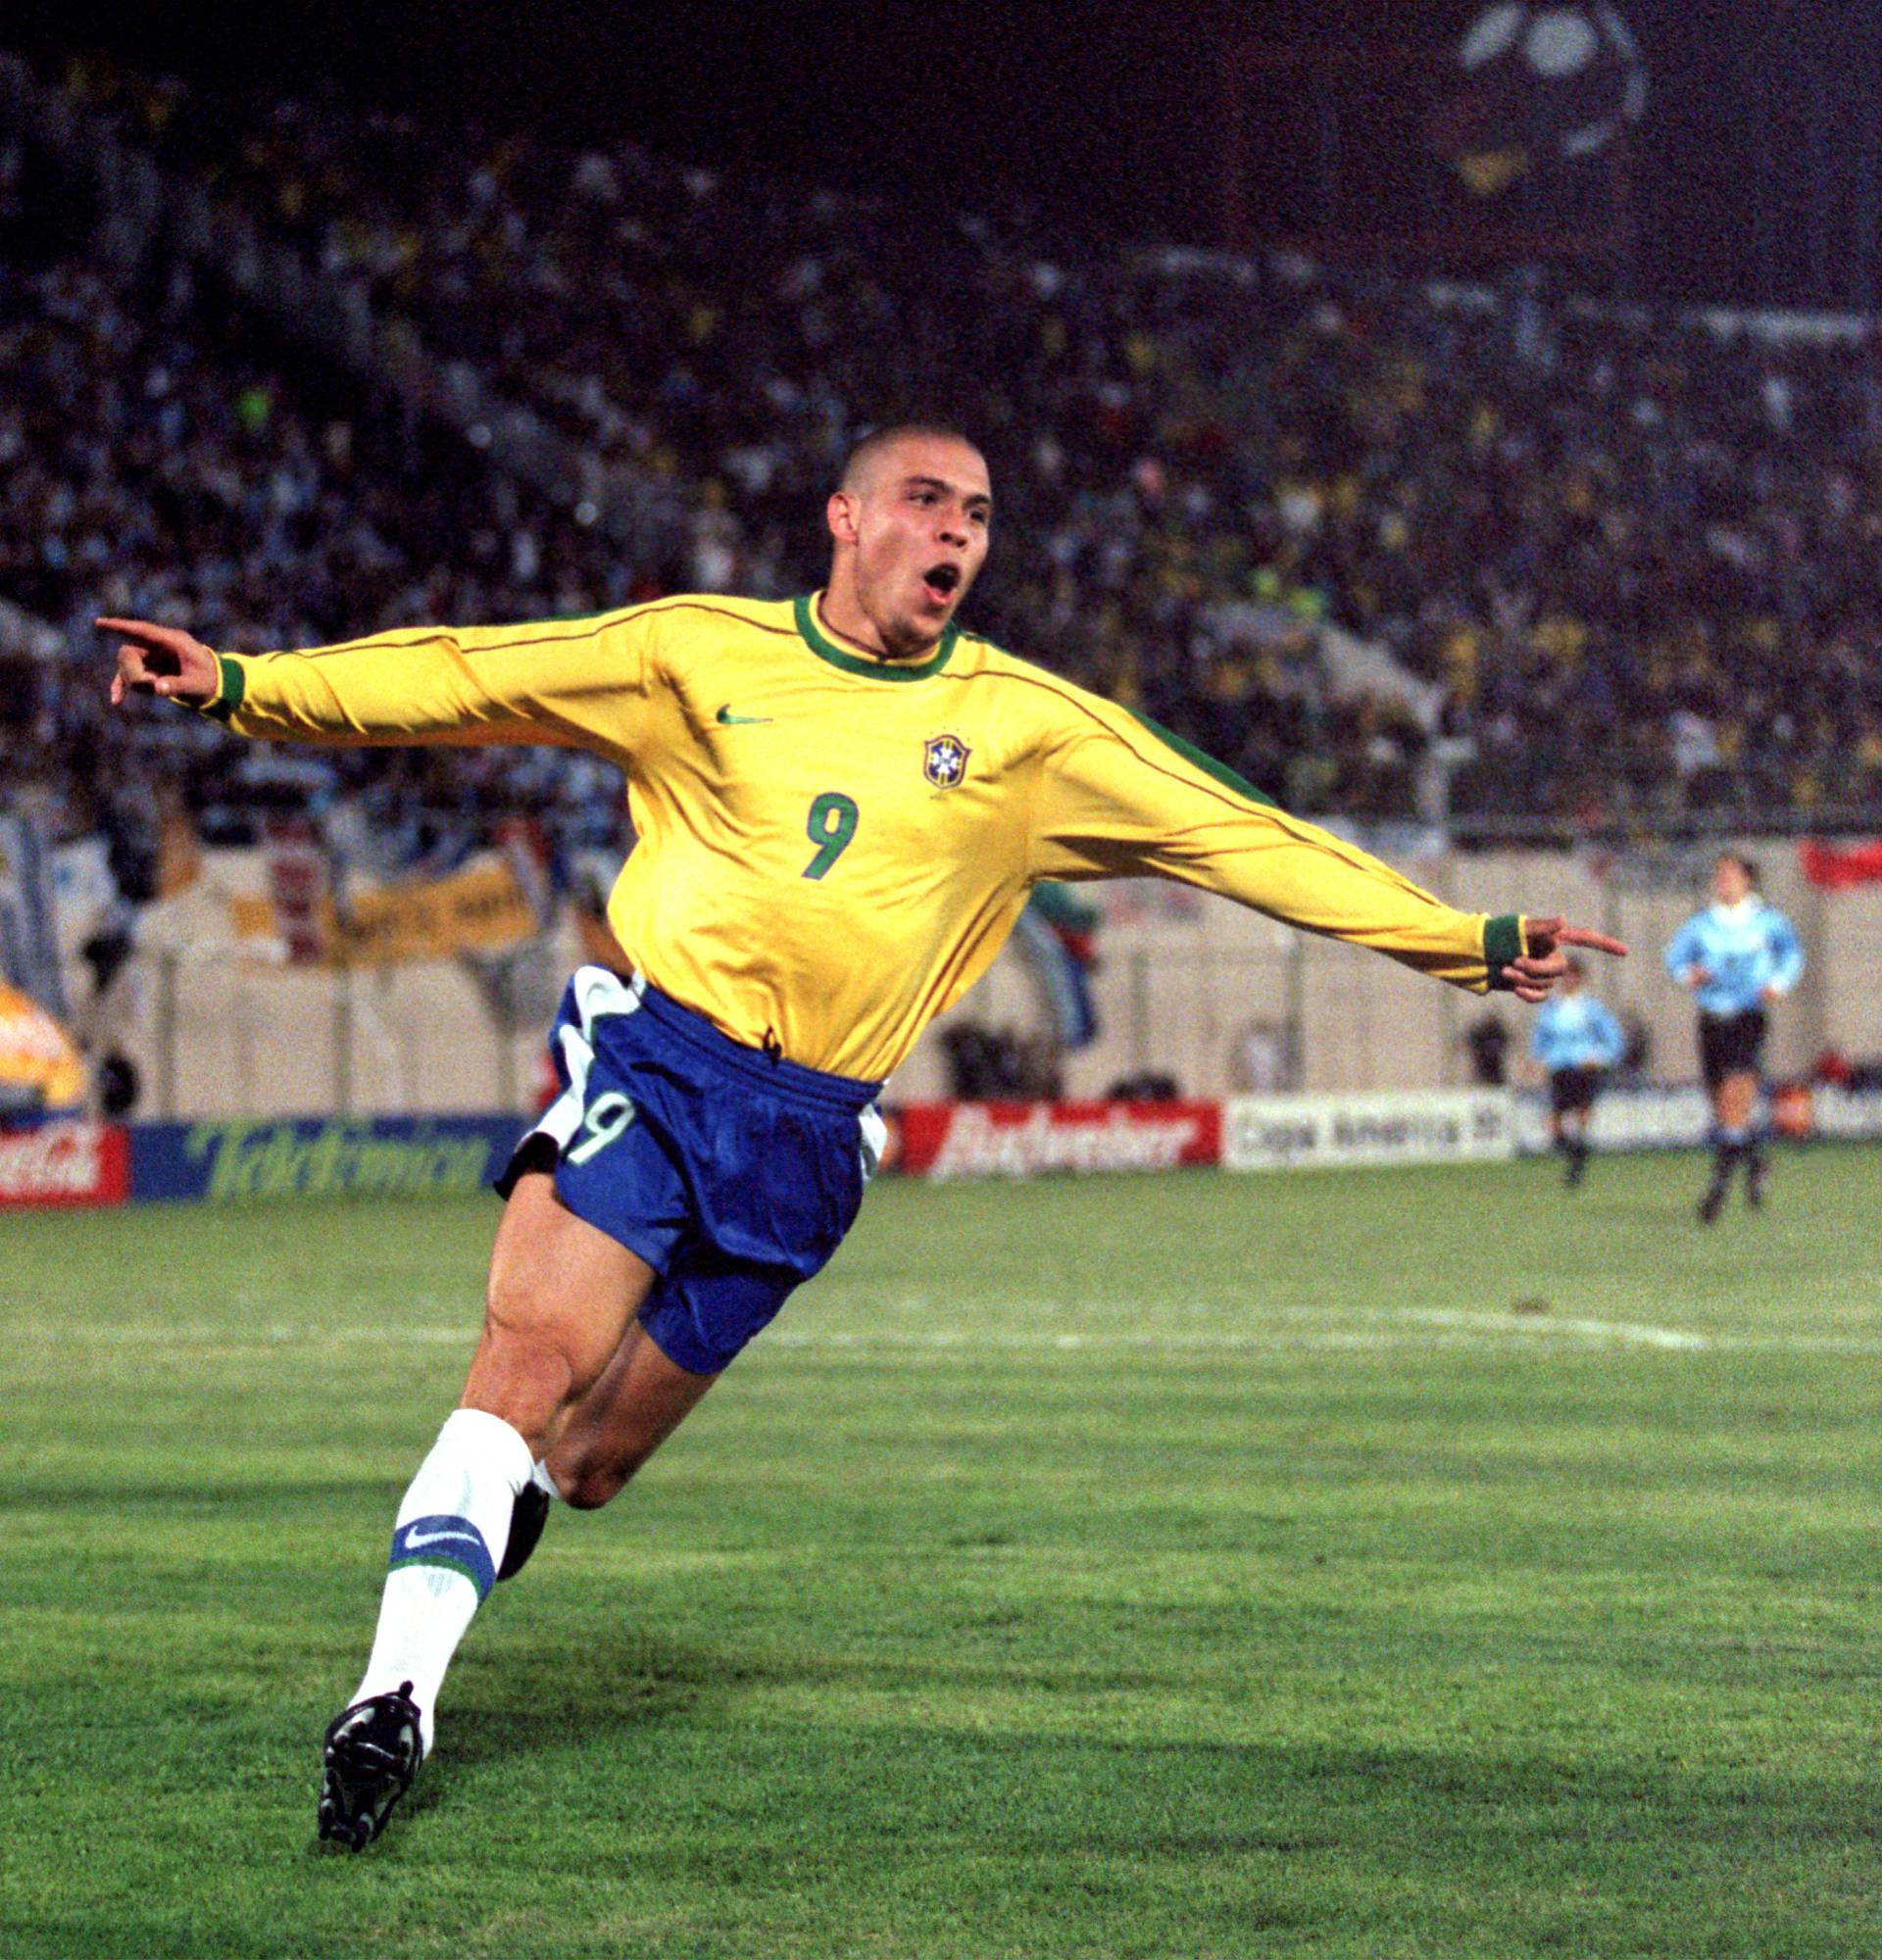 Copa America 99 - Final - Brazil v Uruguay